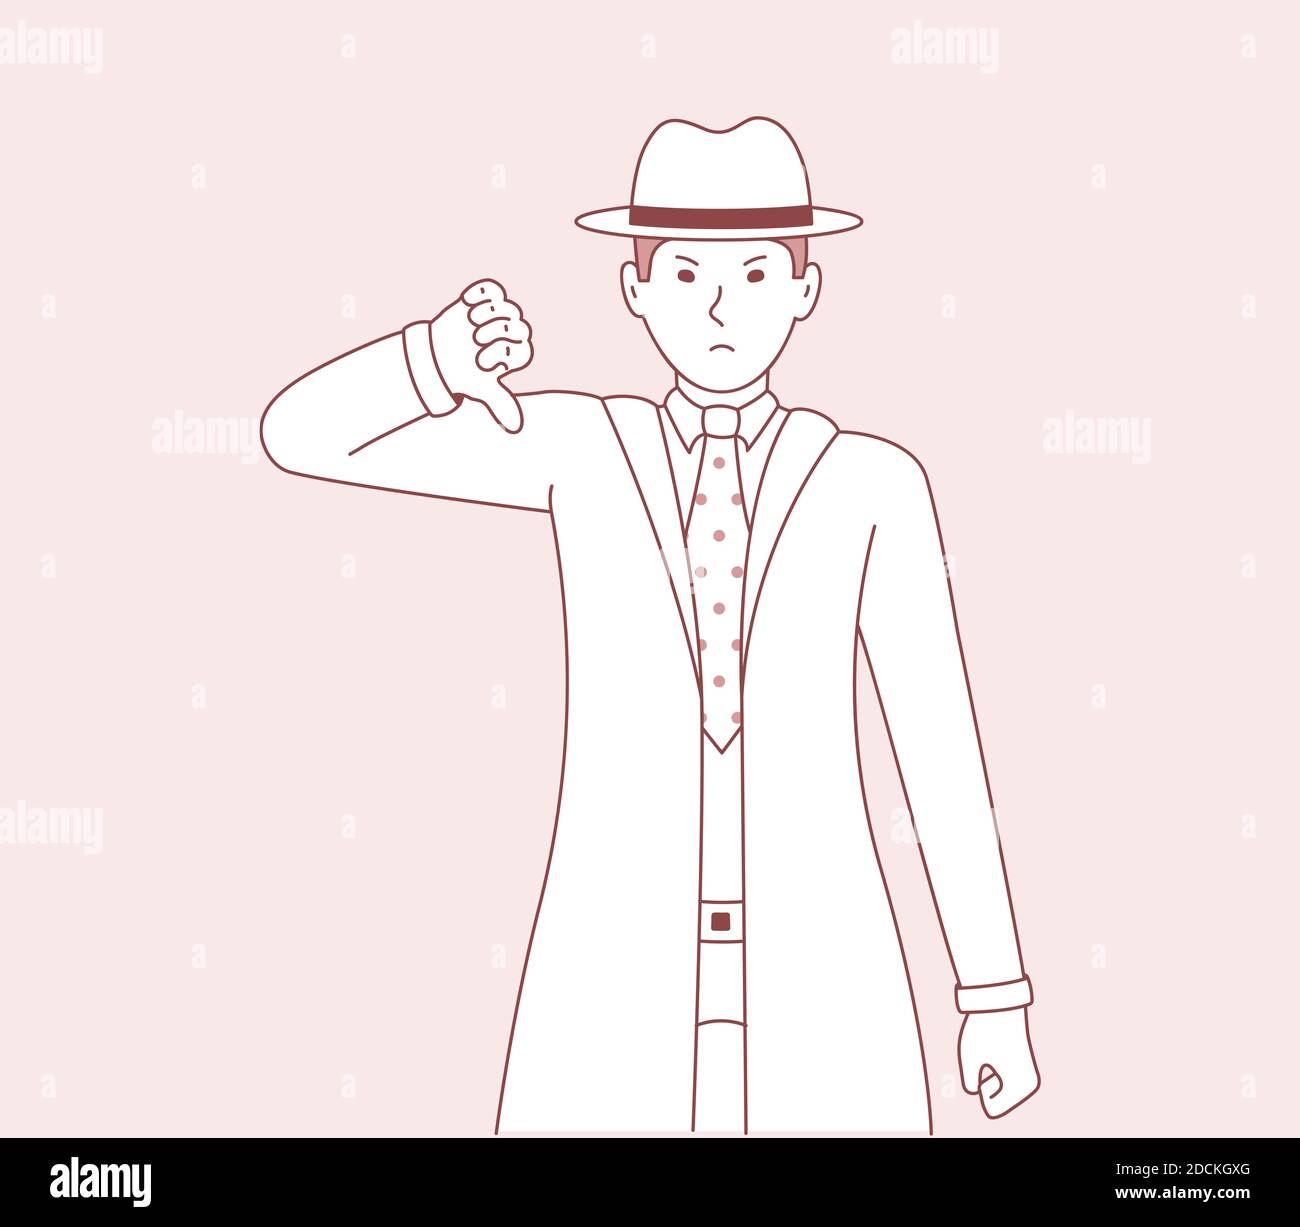 Illustrazione vettoriale di un uomo che mostra un gesto di discordanza ed emozioni negative sul suo volto. Uomini detective cartoon arte Illustrazione Vettoriale